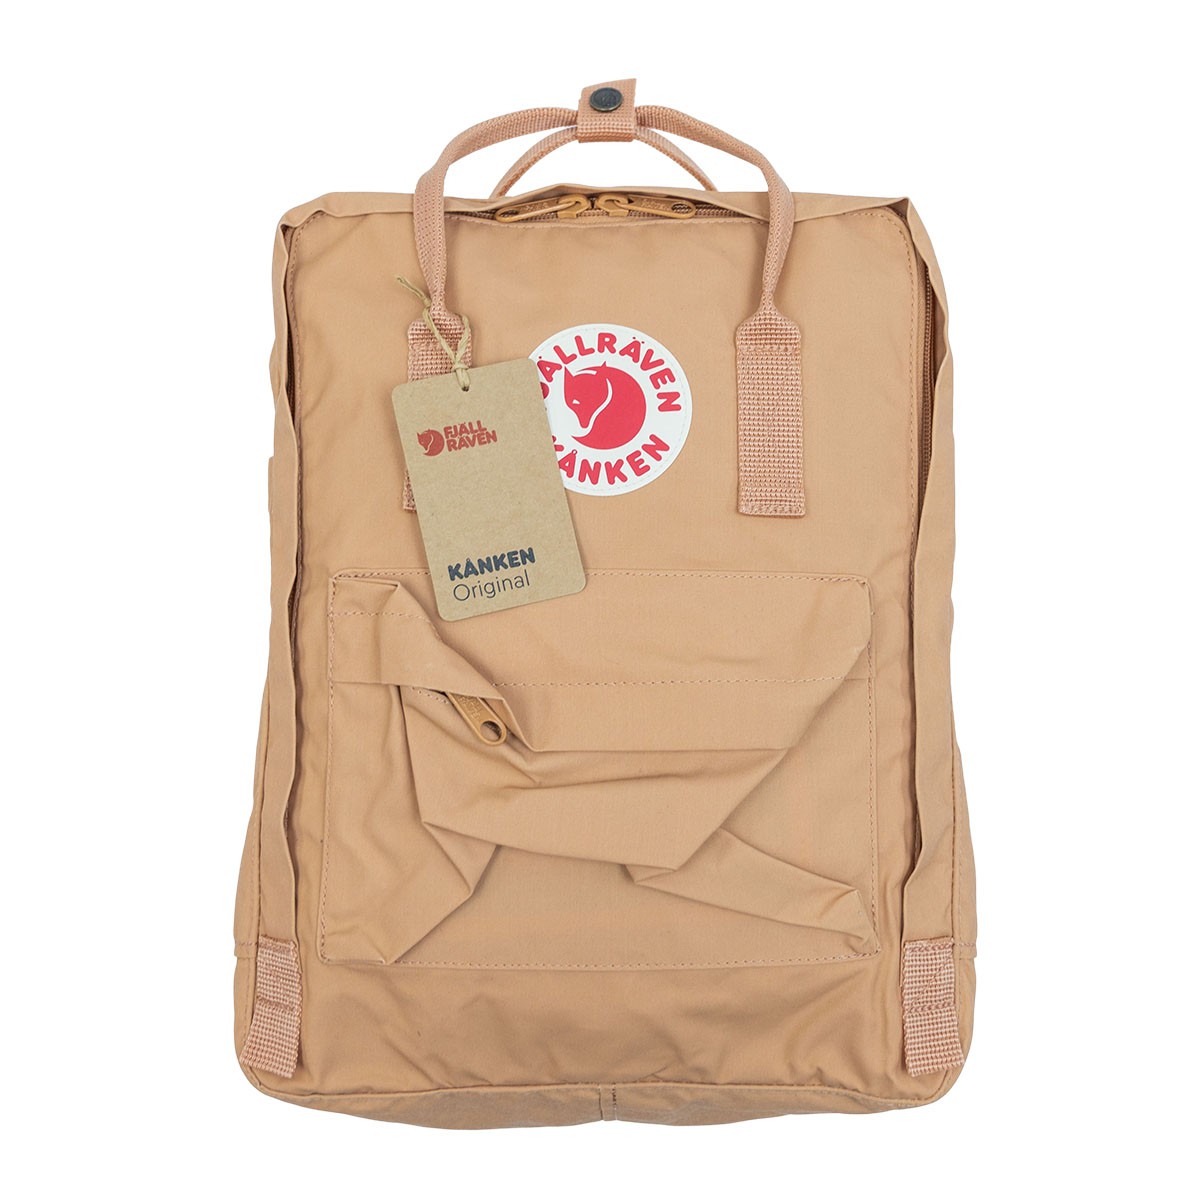 Fjallraven Kanken Classic Backpack 背囊 背包 Peach Sand